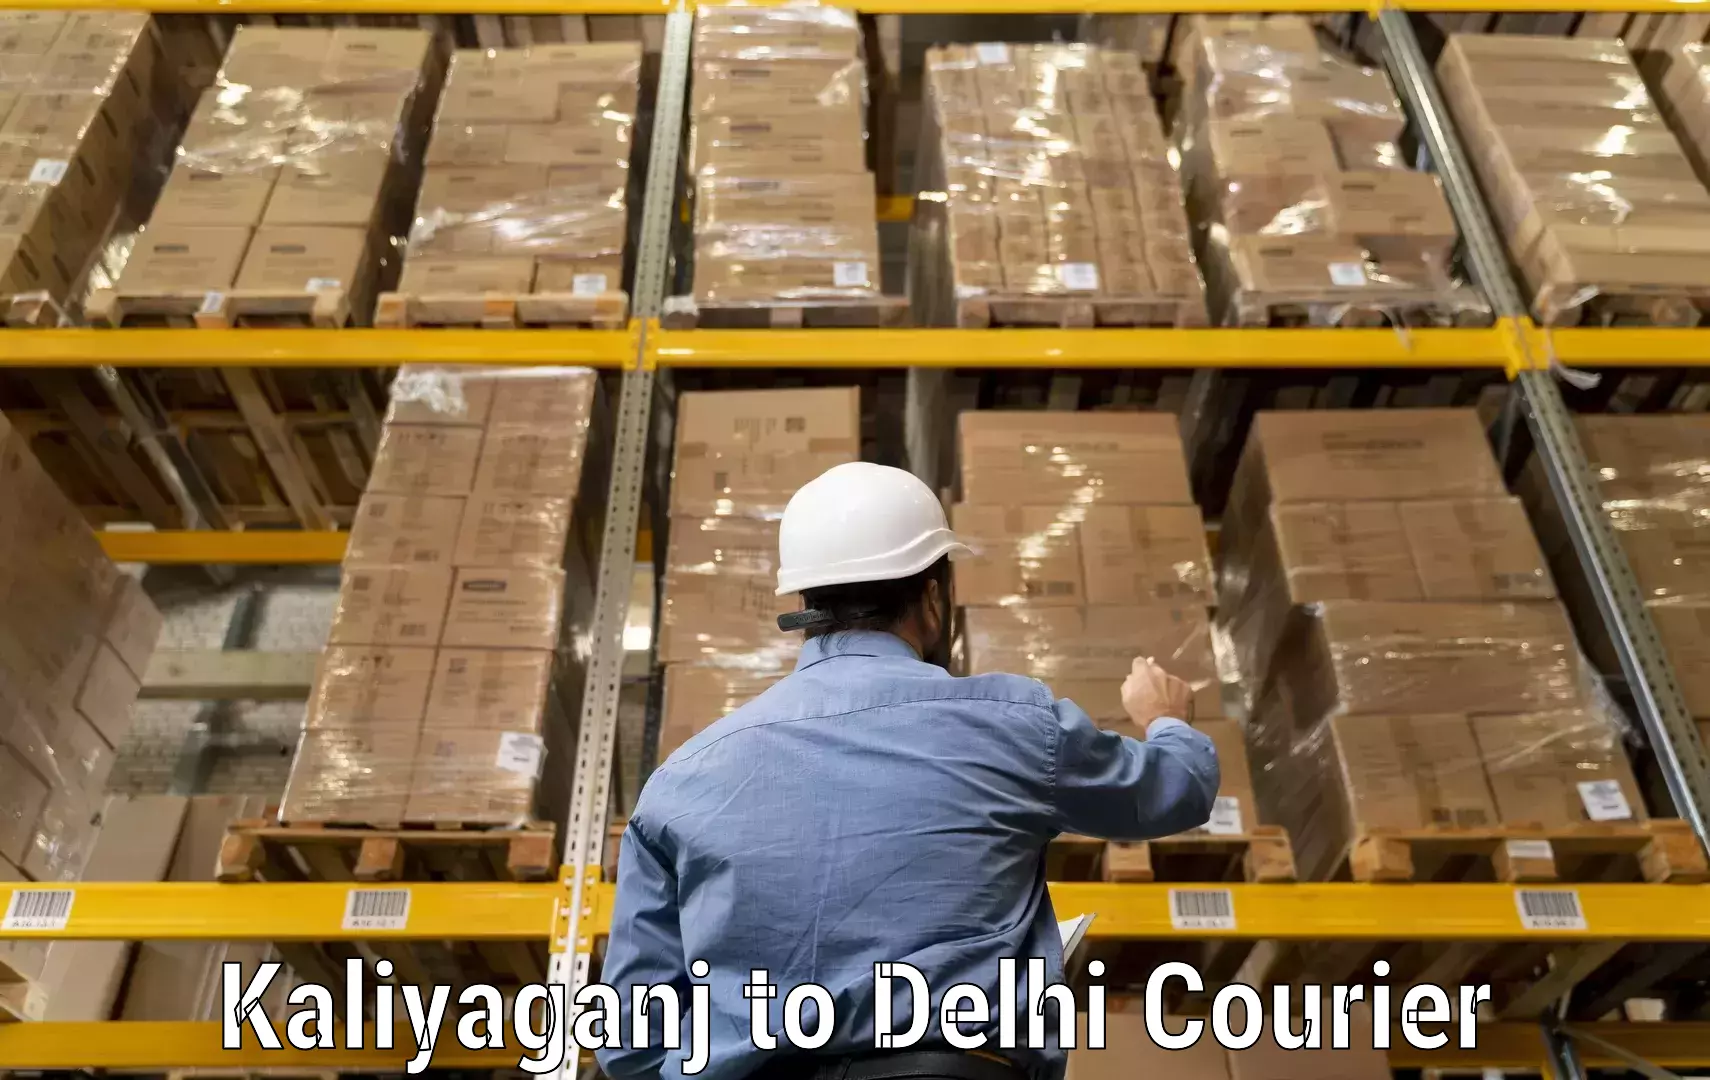 Quick courier services Kaliyaganj to Jamia Millia Islamia New Delhi